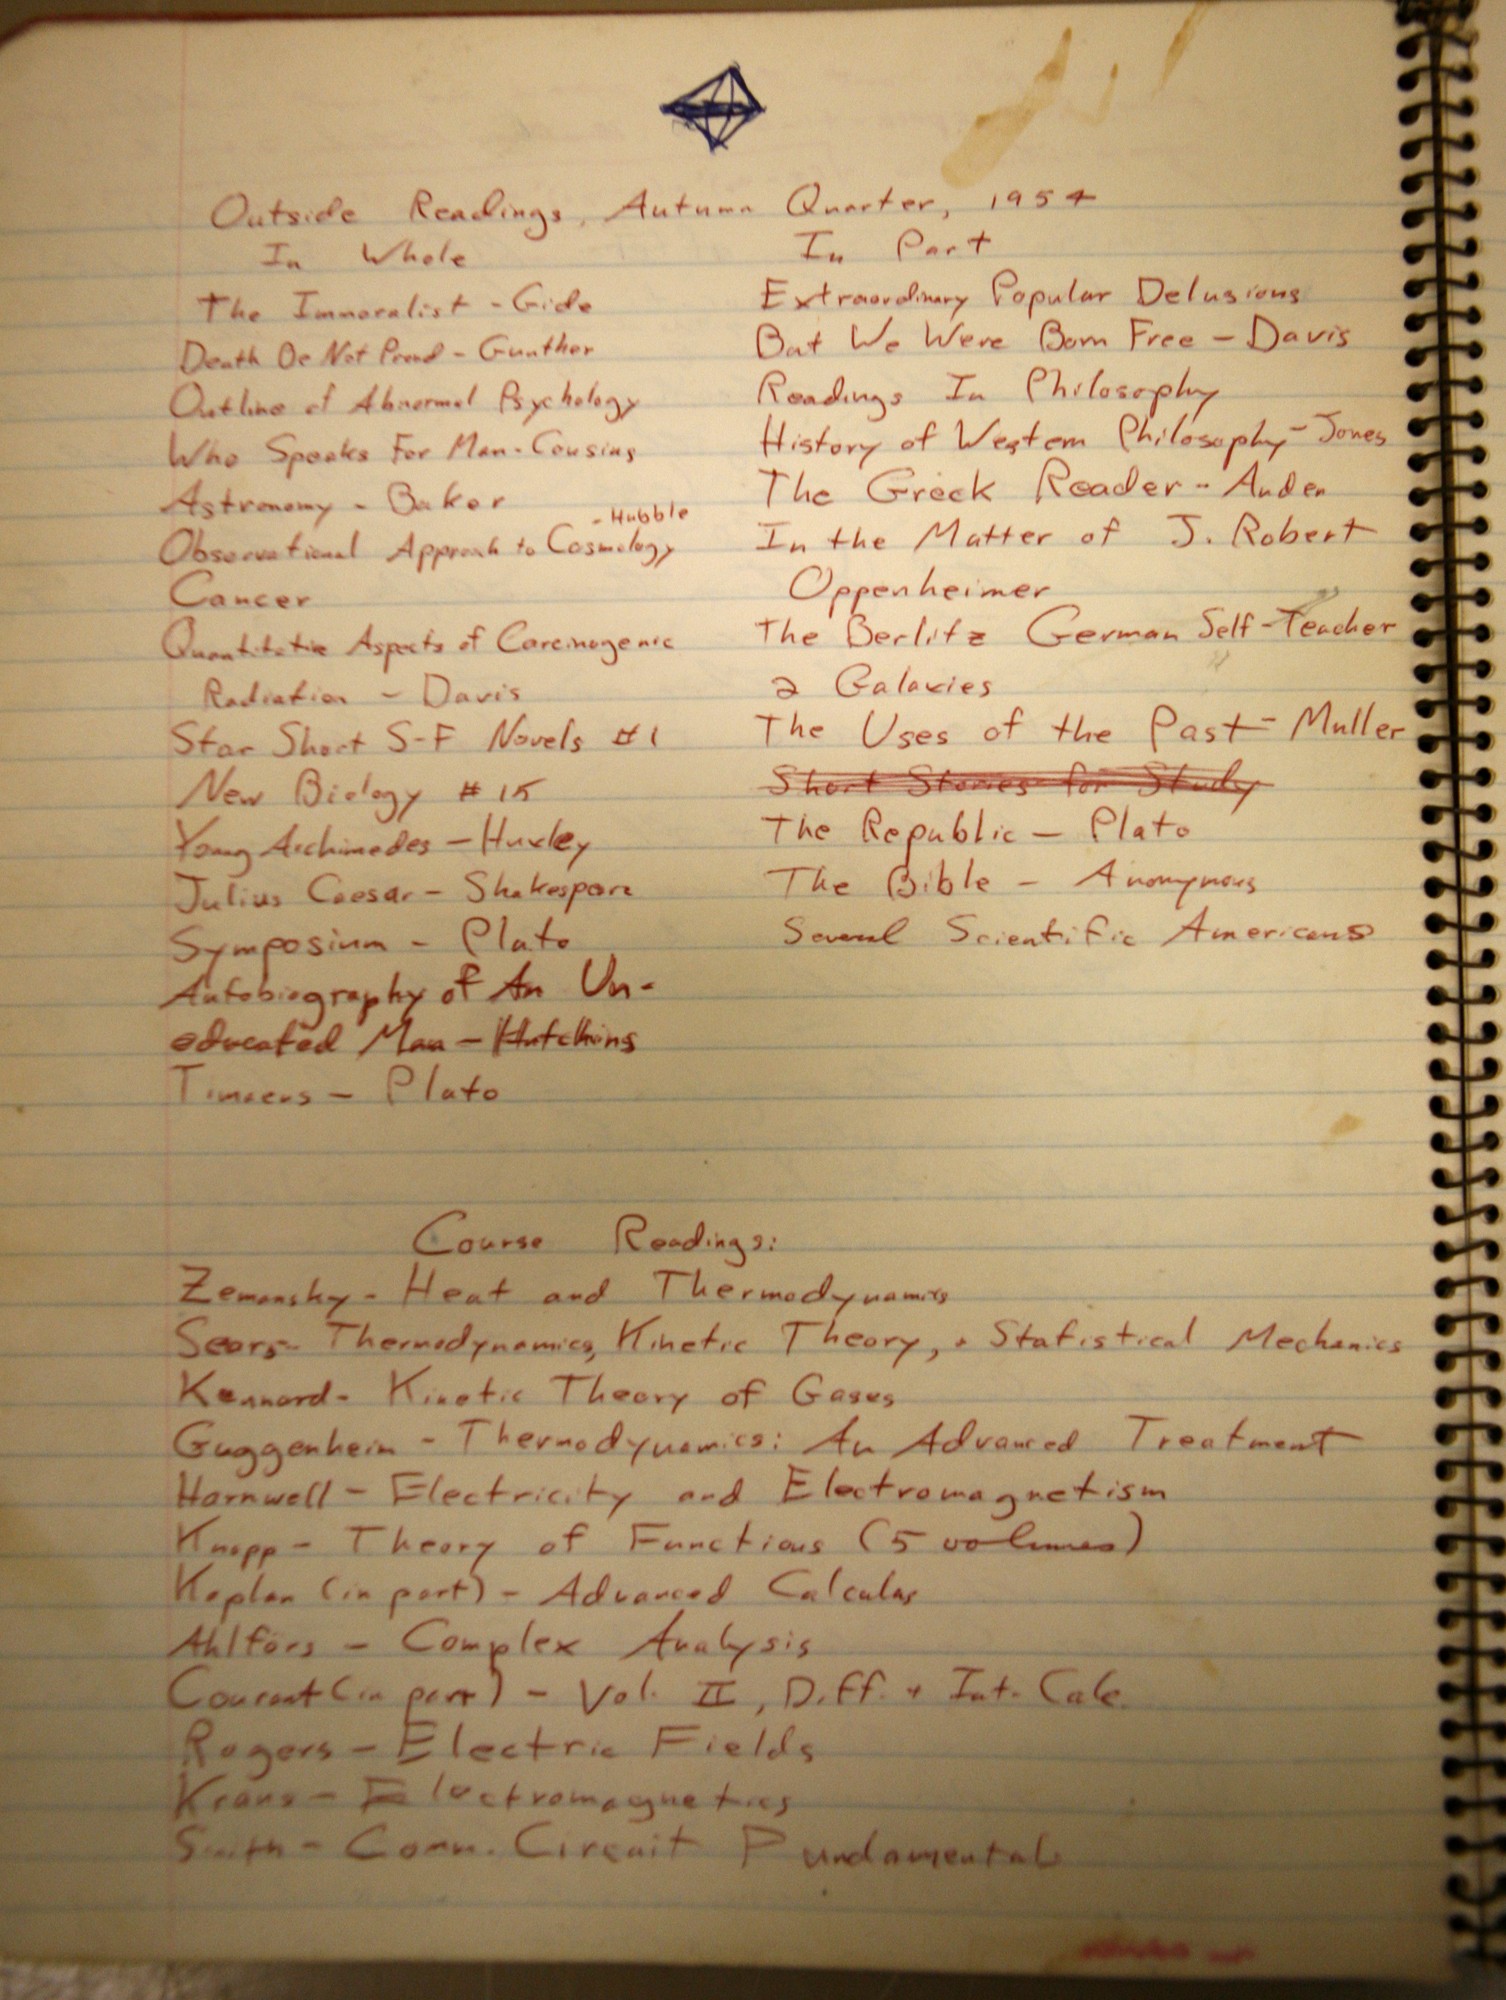 Lista de leitura completa escrita à mão por Carl Sagan em 1954 (Foto: Reprodução)